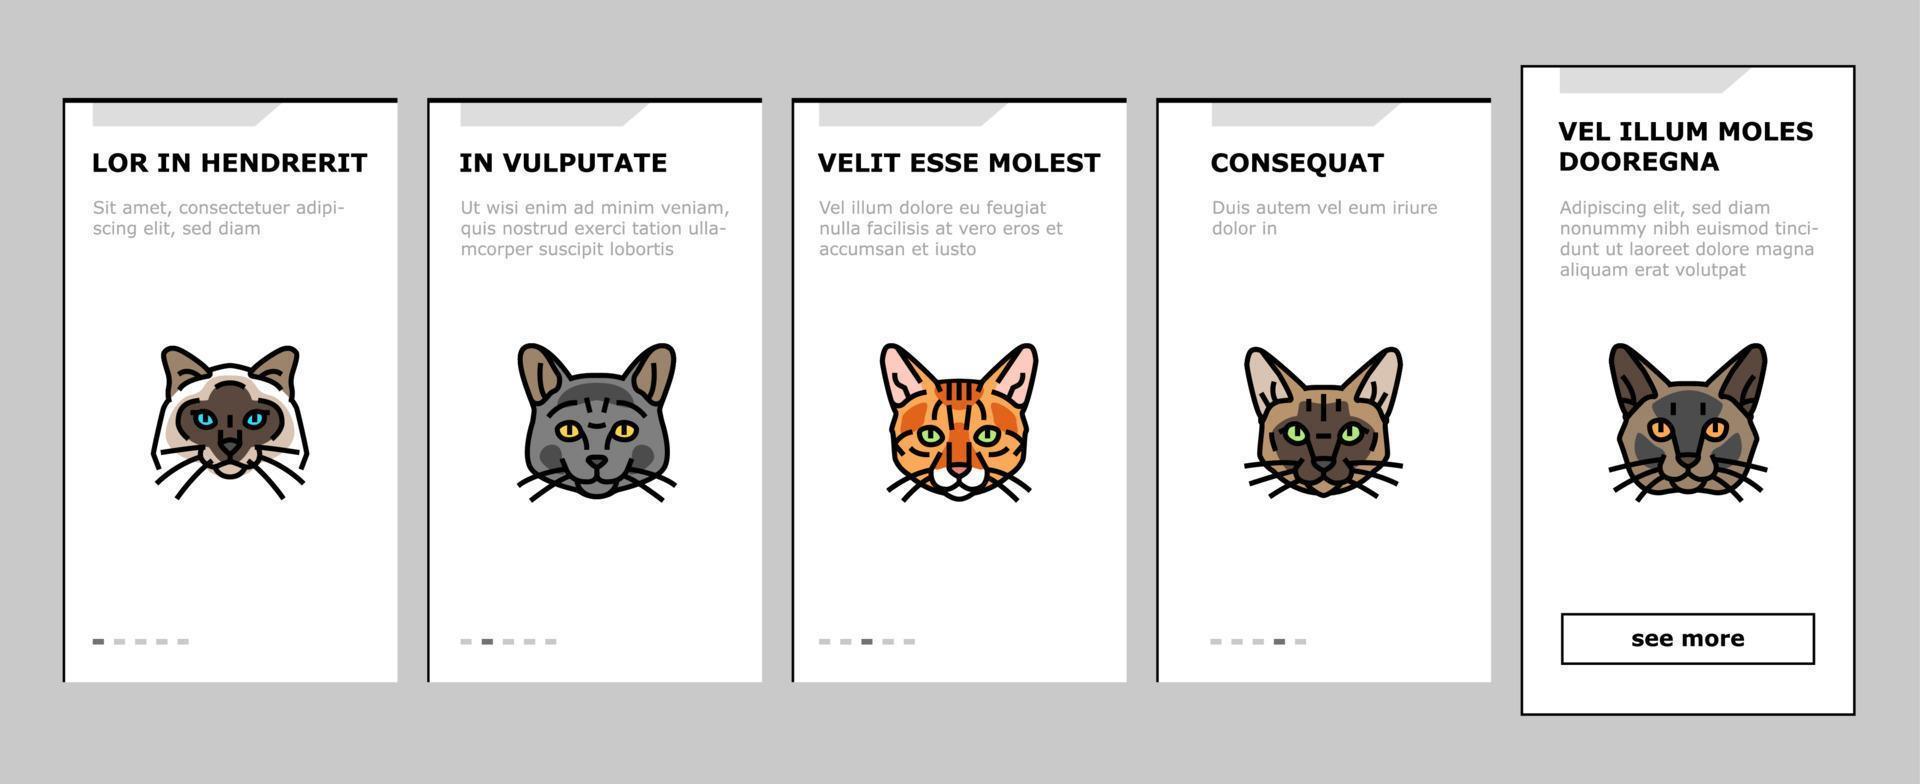 gato fofo animal de estimação gatinho engraçado conjunto de ícones de integração vetor